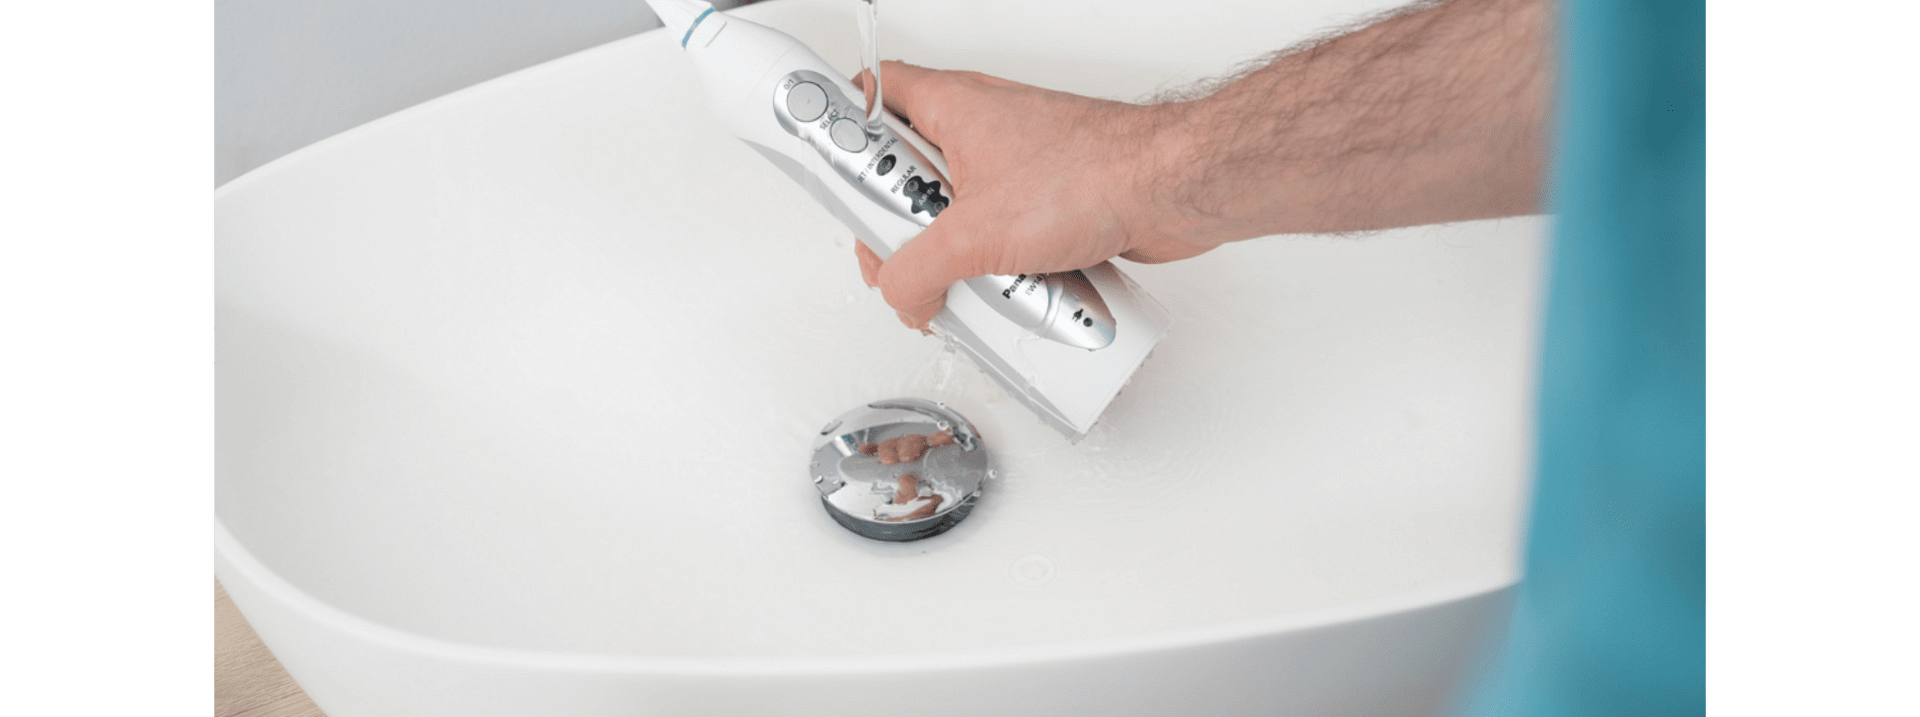 Зъбен душ Panasonic EW1411H845, Батерия, Почистване на парадонтални джобове, Бял/Сребрист